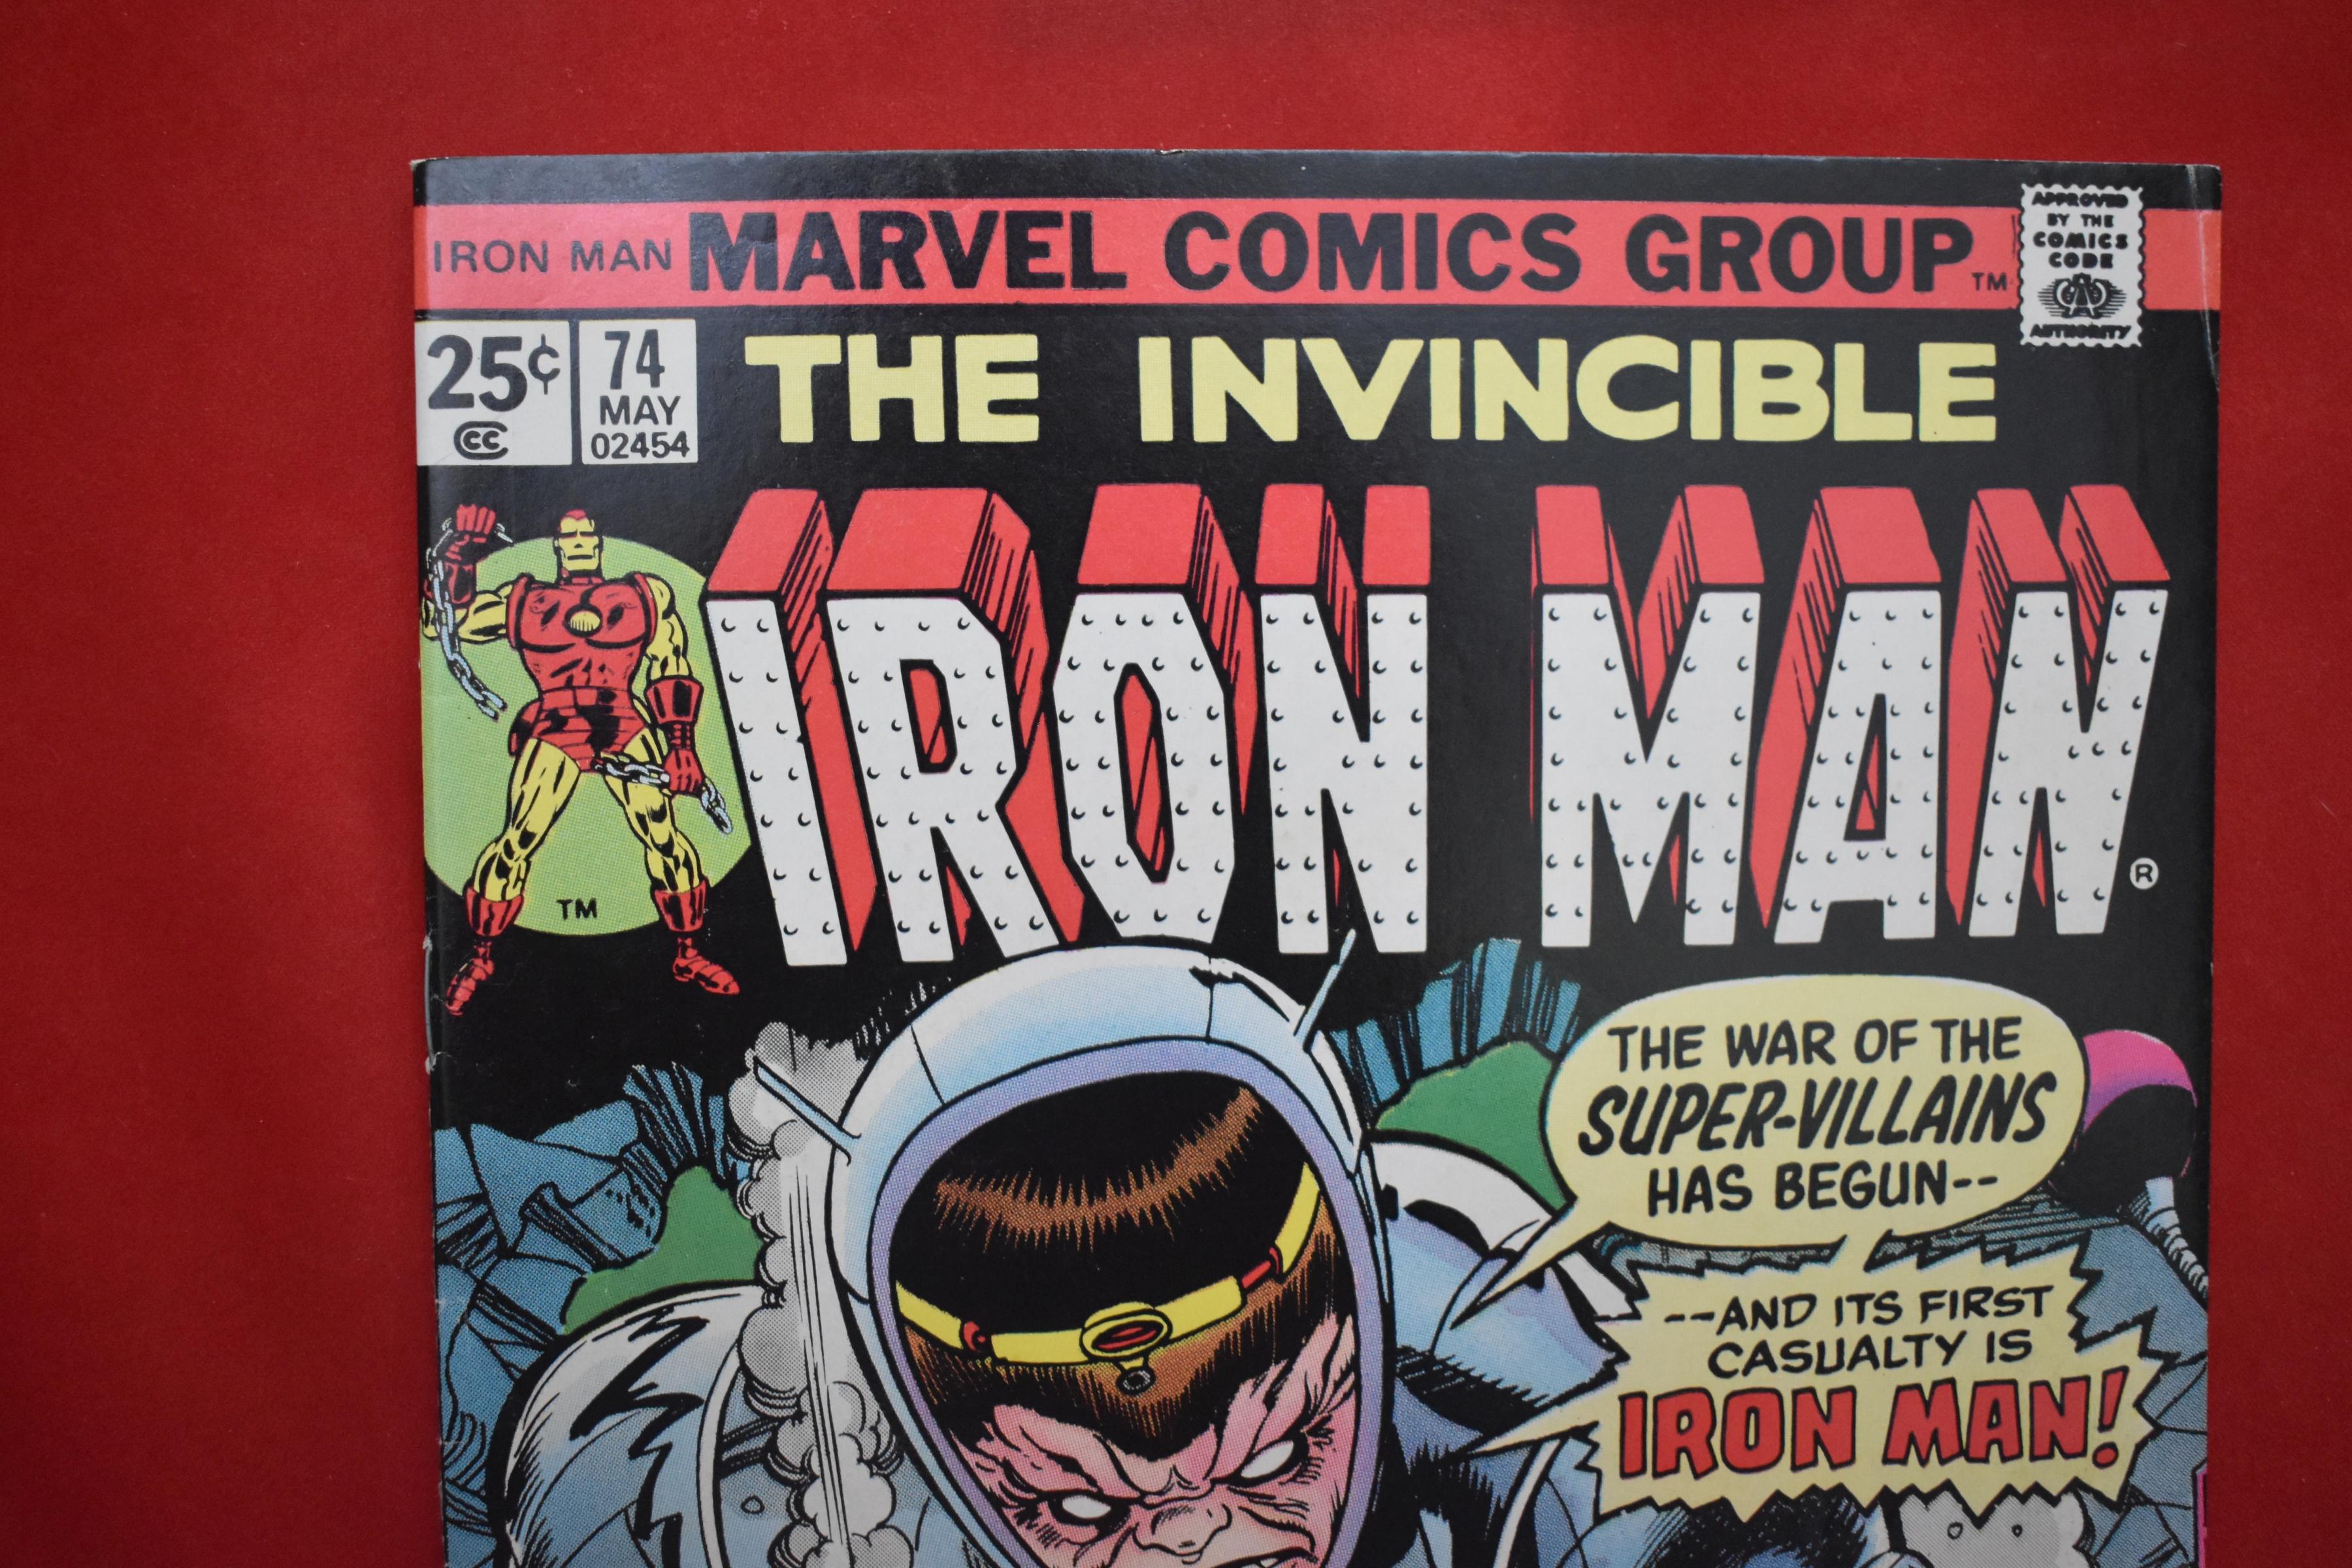 IRON MAN #74 | THE MODOK MACHINE! | GIL KANE - 1975